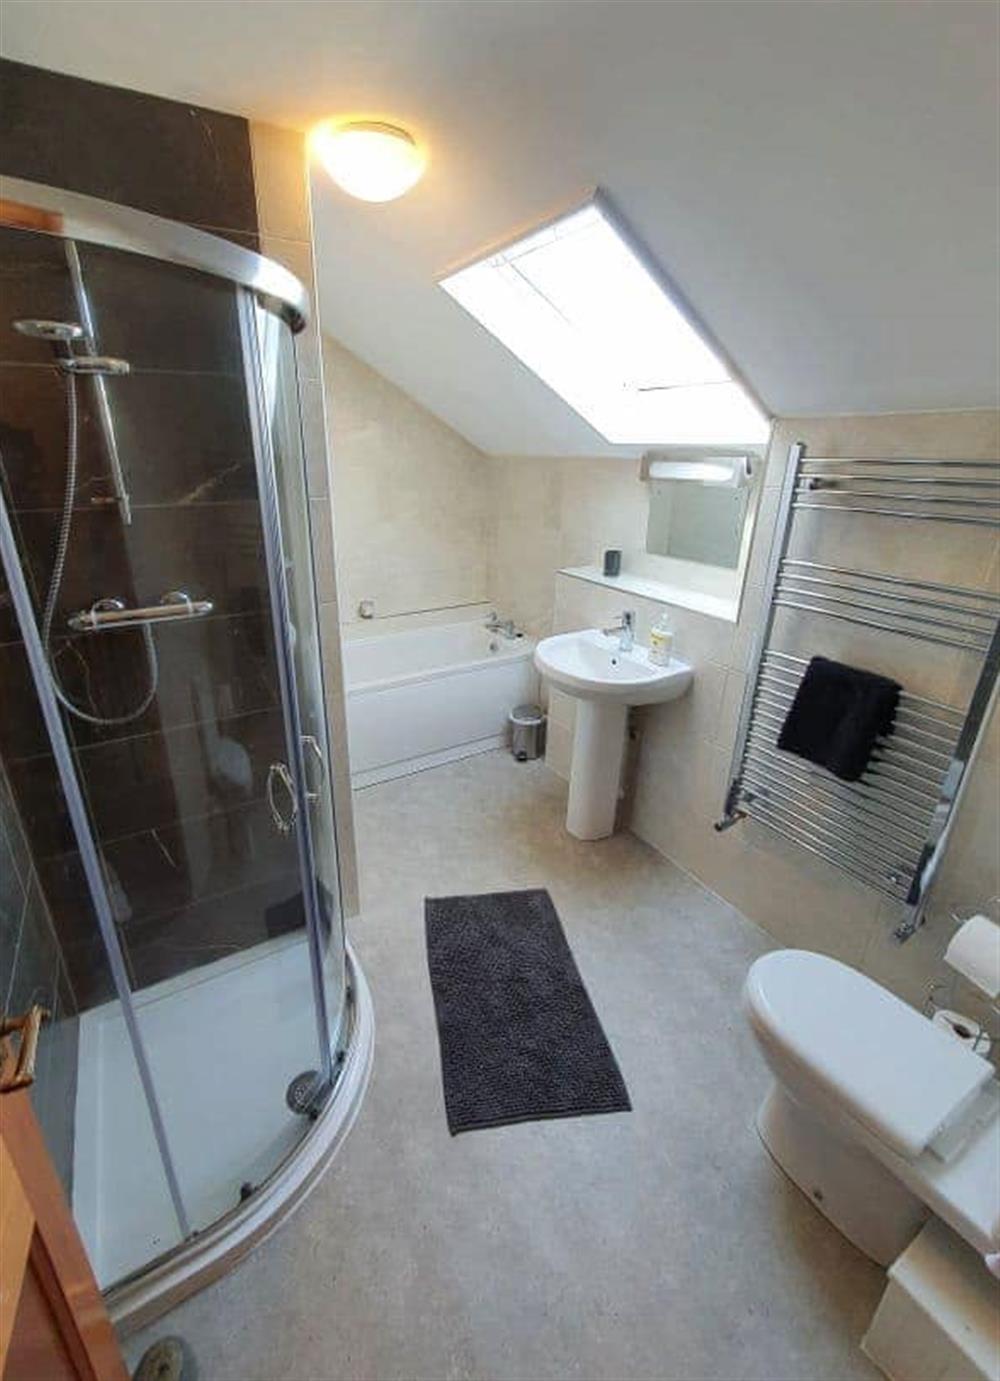 The bathroom at Ty Fferm in Croesgoch, Pembrokeshire, Dyfed